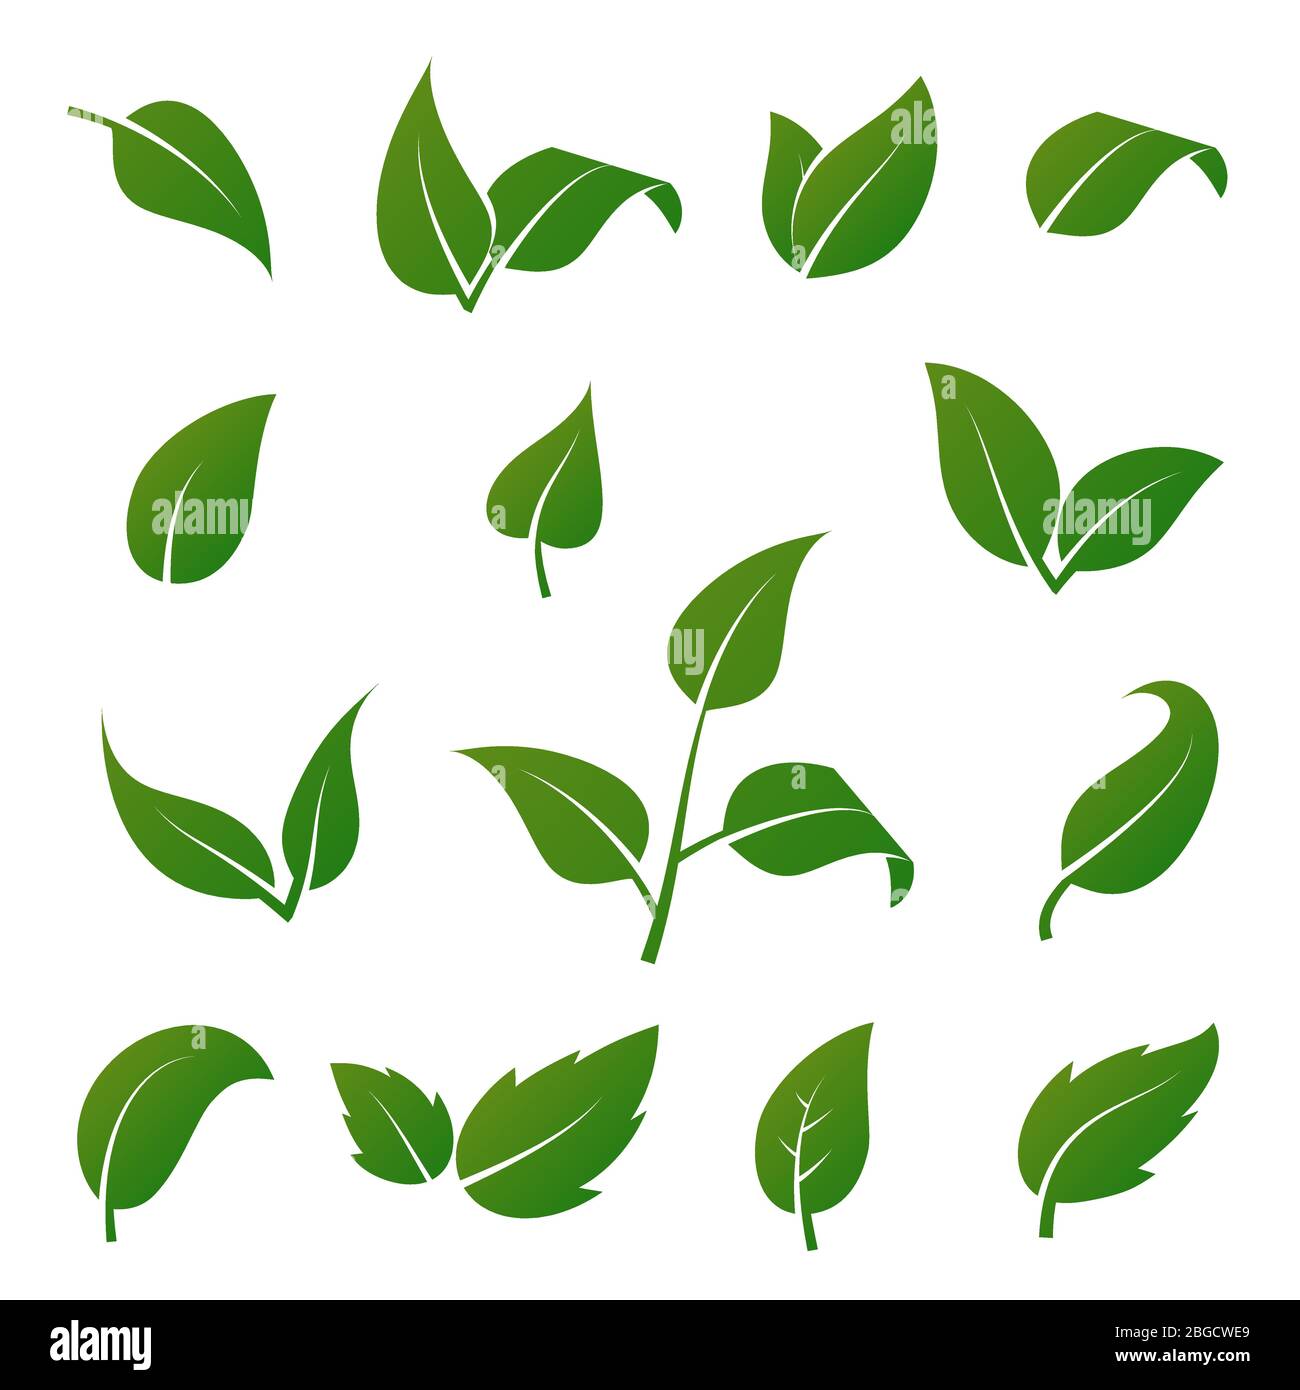 Iconos de vectores de hojas de árboles y plantas verdes aislados sobre fondo blanco. Conjunto de símbolos ecológicos. Hoja verde vegetal, ilustración floral natural orgánica Ilustración del Vector